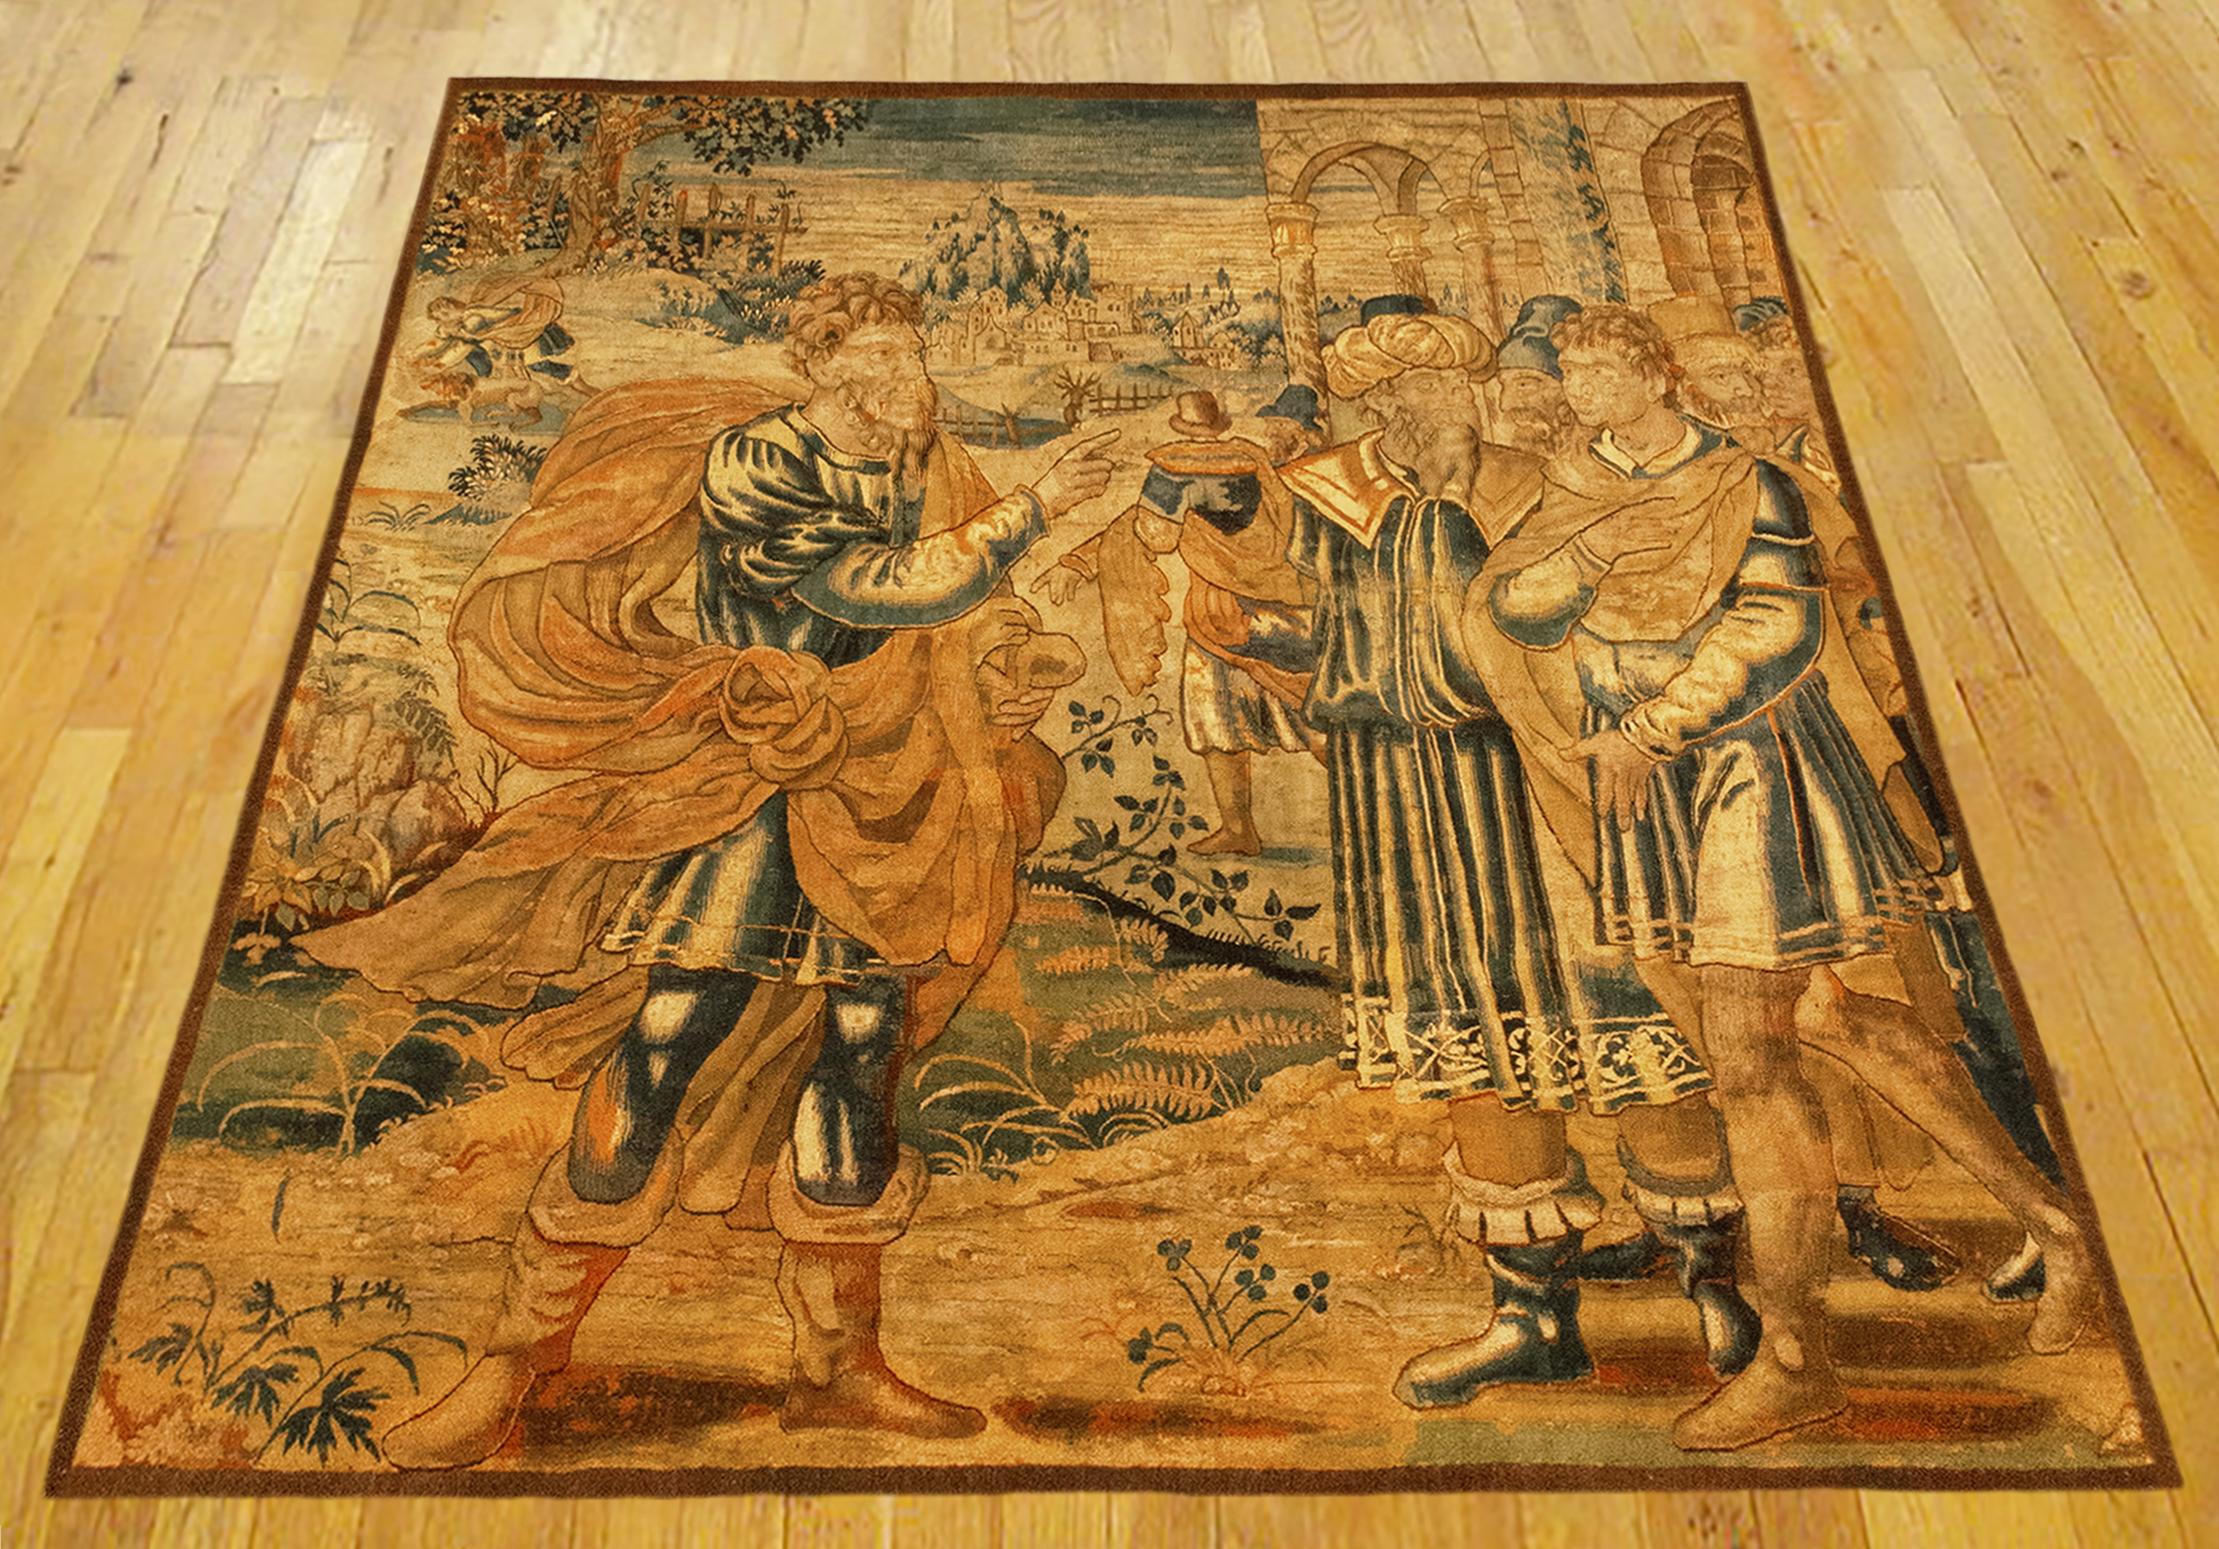 Une tapisserie flamande de la fin du XVIe siècle, avec le célèbre général romain Scipion à gauche, après avoir conquis Carthage lors de la bataille de Zama, mettant fin à la deuxième guerre punique. Mesures : 8'6